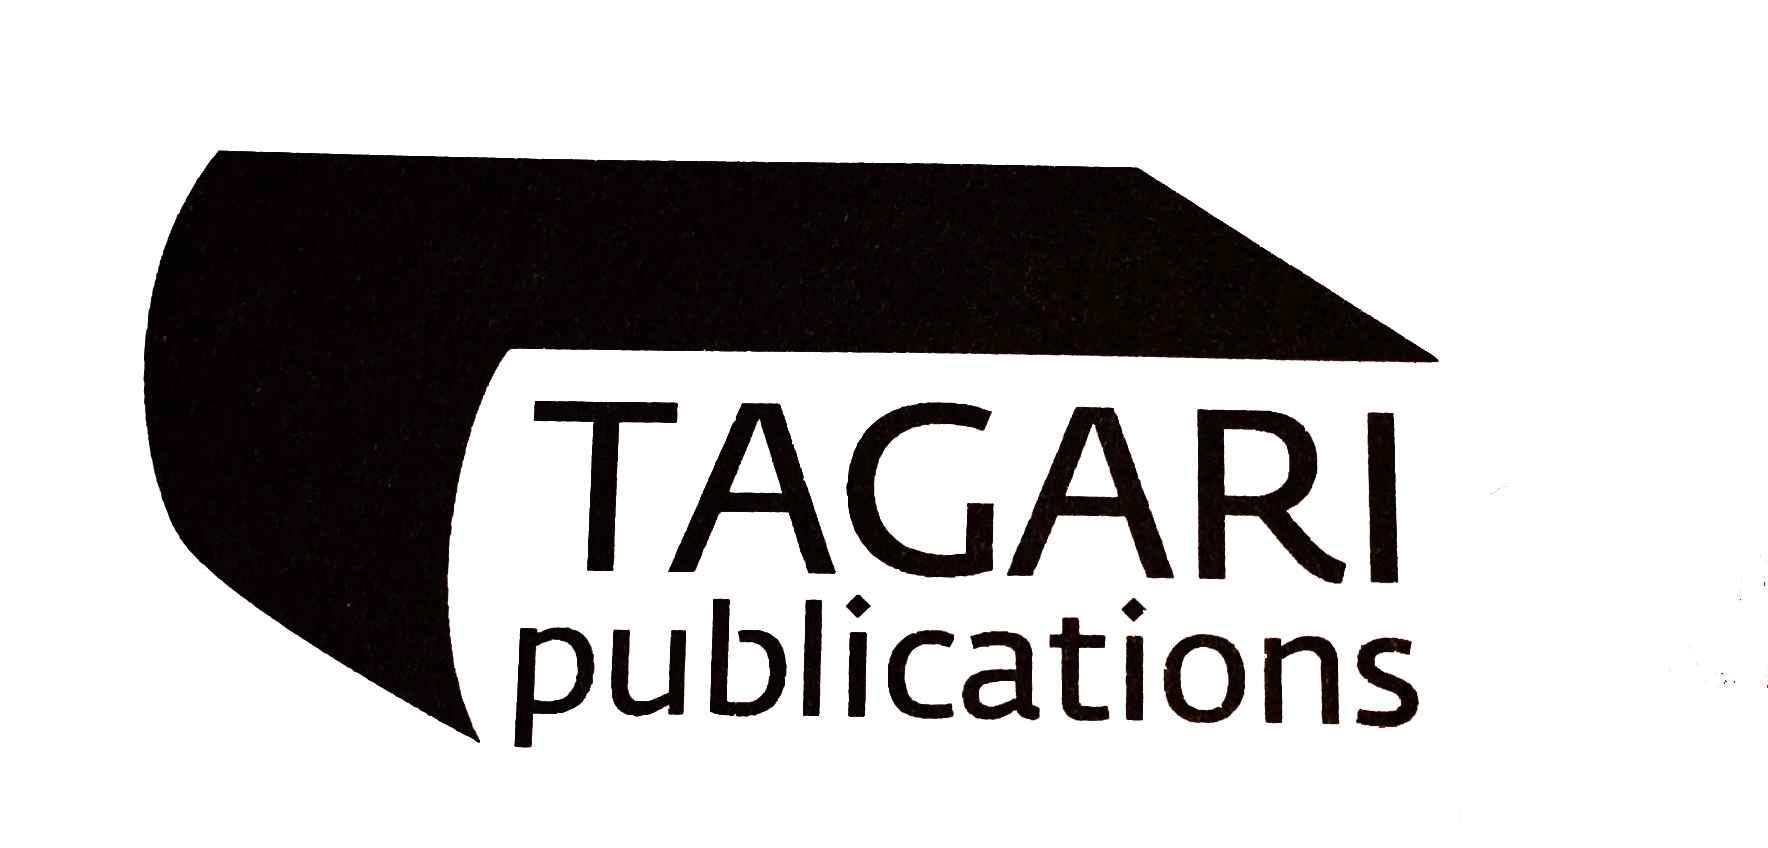 Tagari Publications